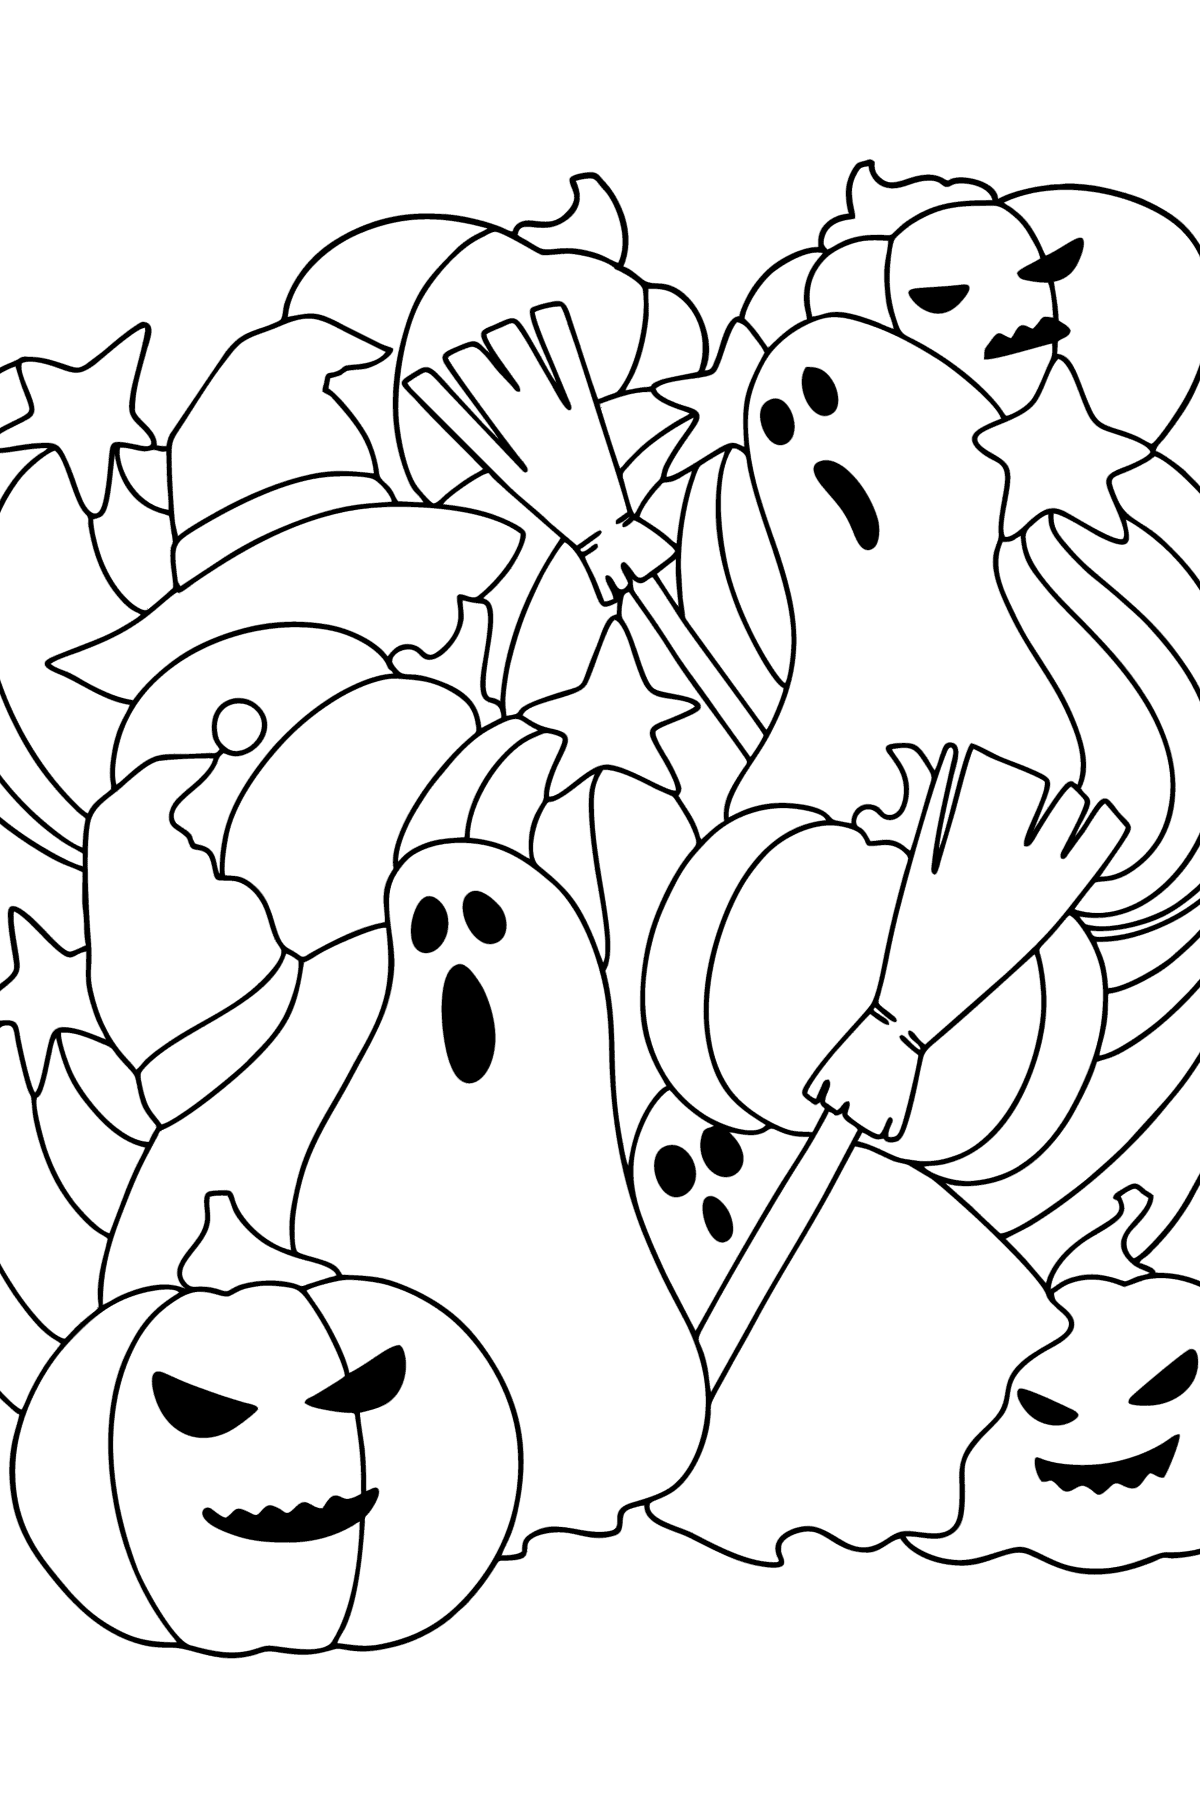 Kleurplaat Doodle voor kinderen - Halloween - kleurplaten voor kinderen